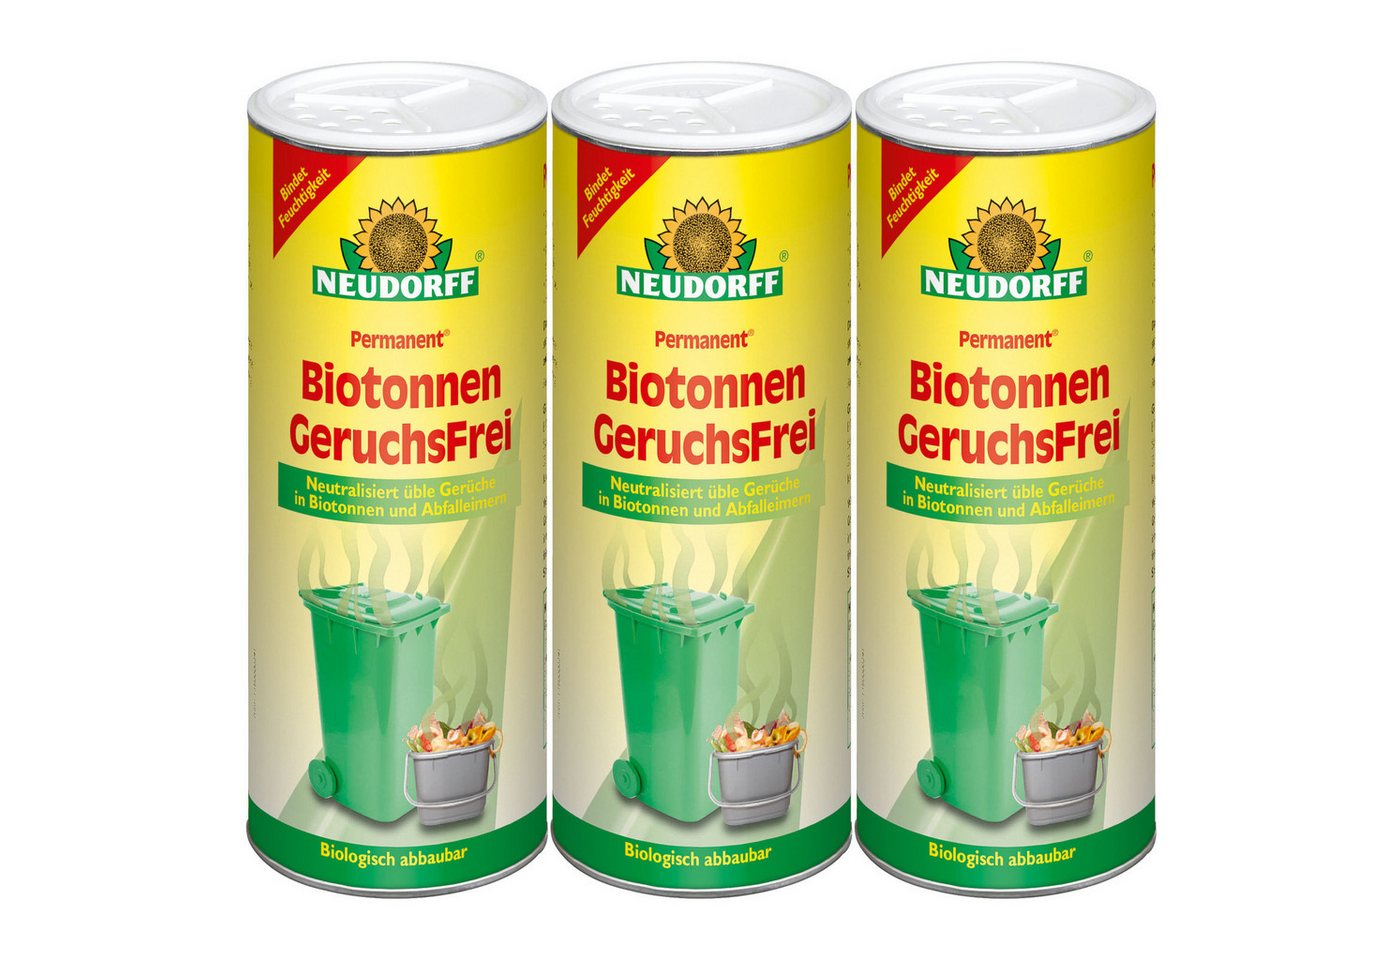 Neudorff Biotonnenpulver Permanent Biotonnen GeruchsFrei - 3x 500 g von Neudorff